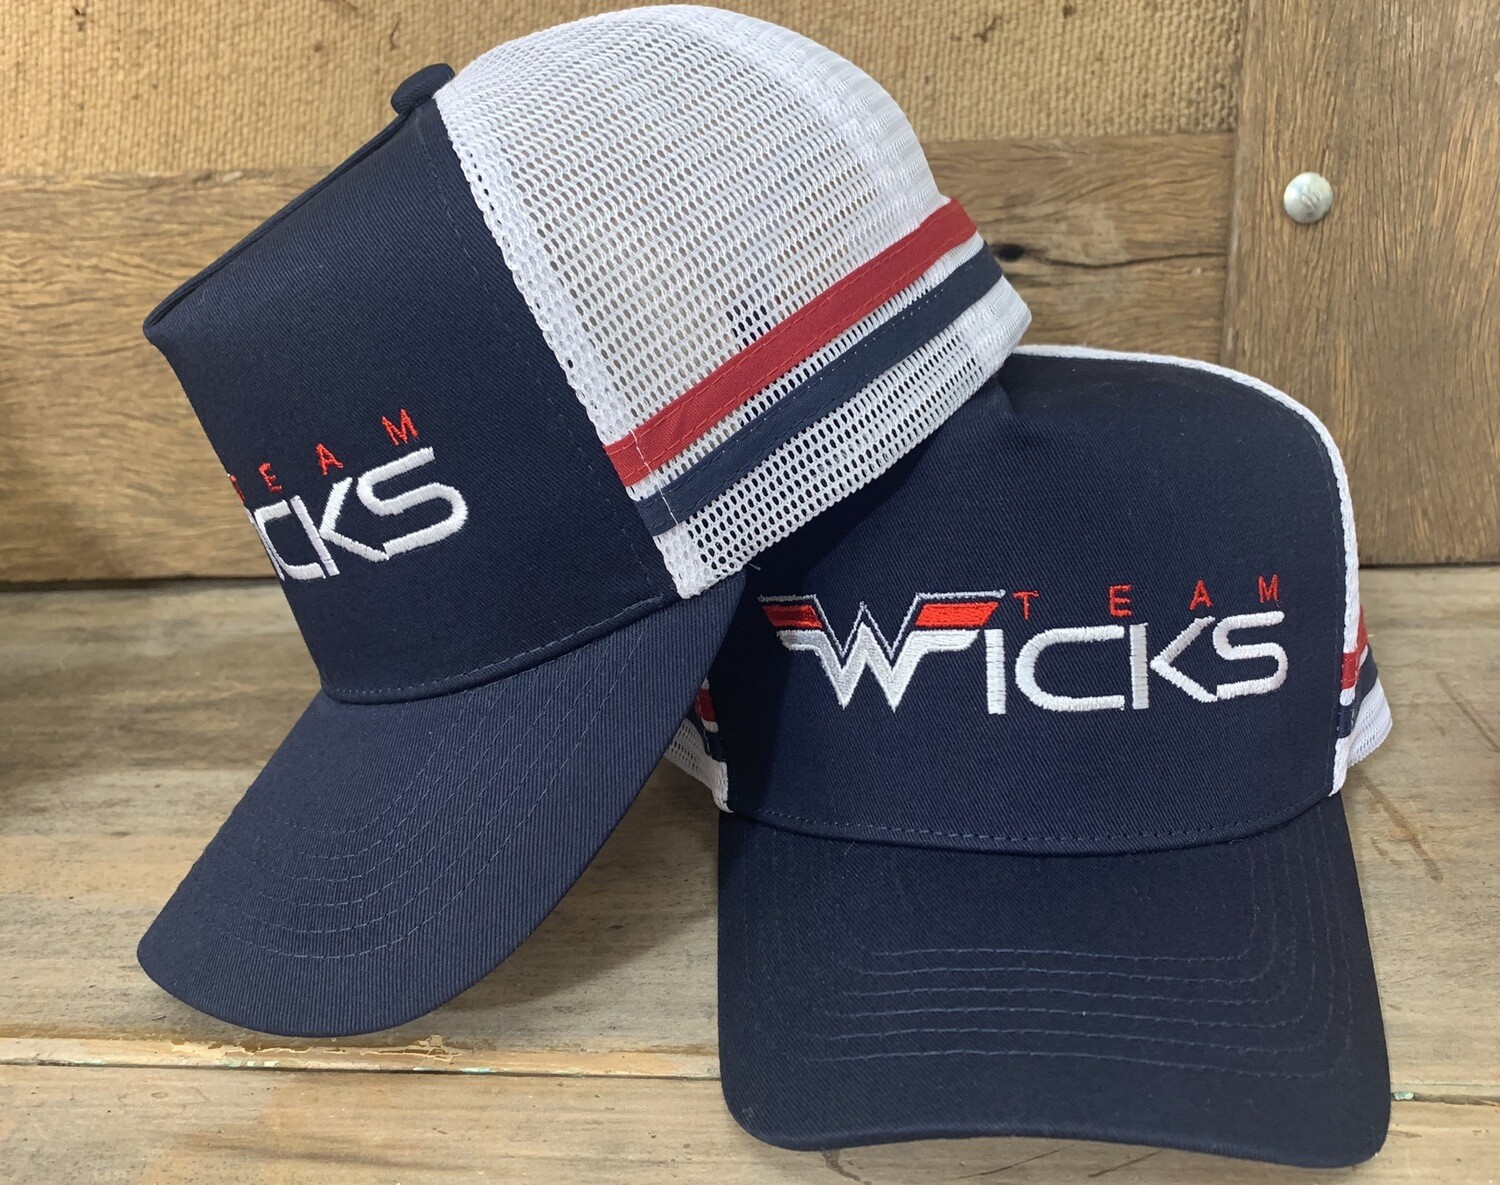 Wicks Trucker Caps